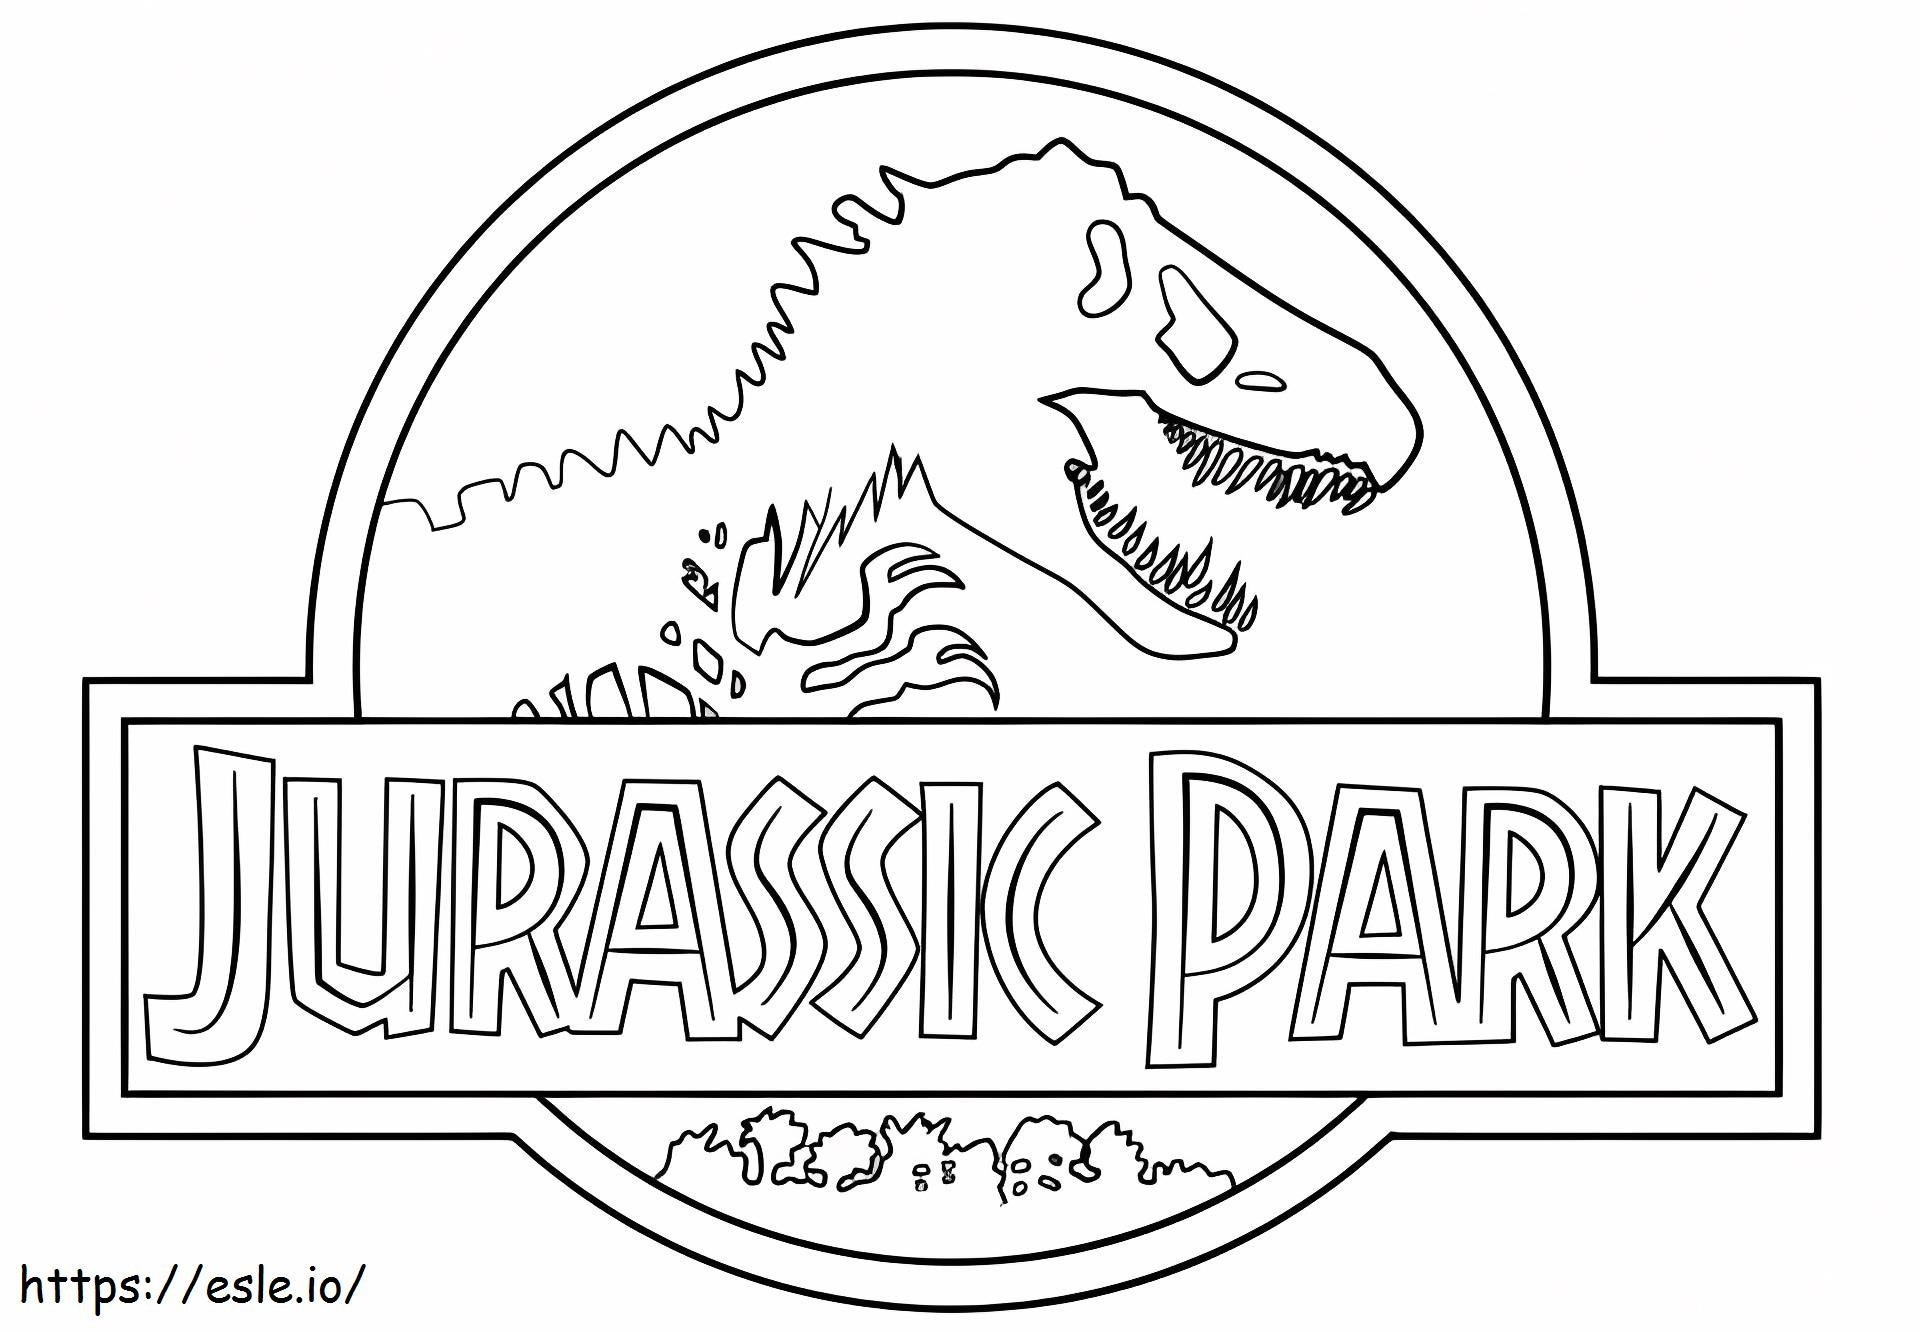 Logotipo del Parque Jurásico para colorear